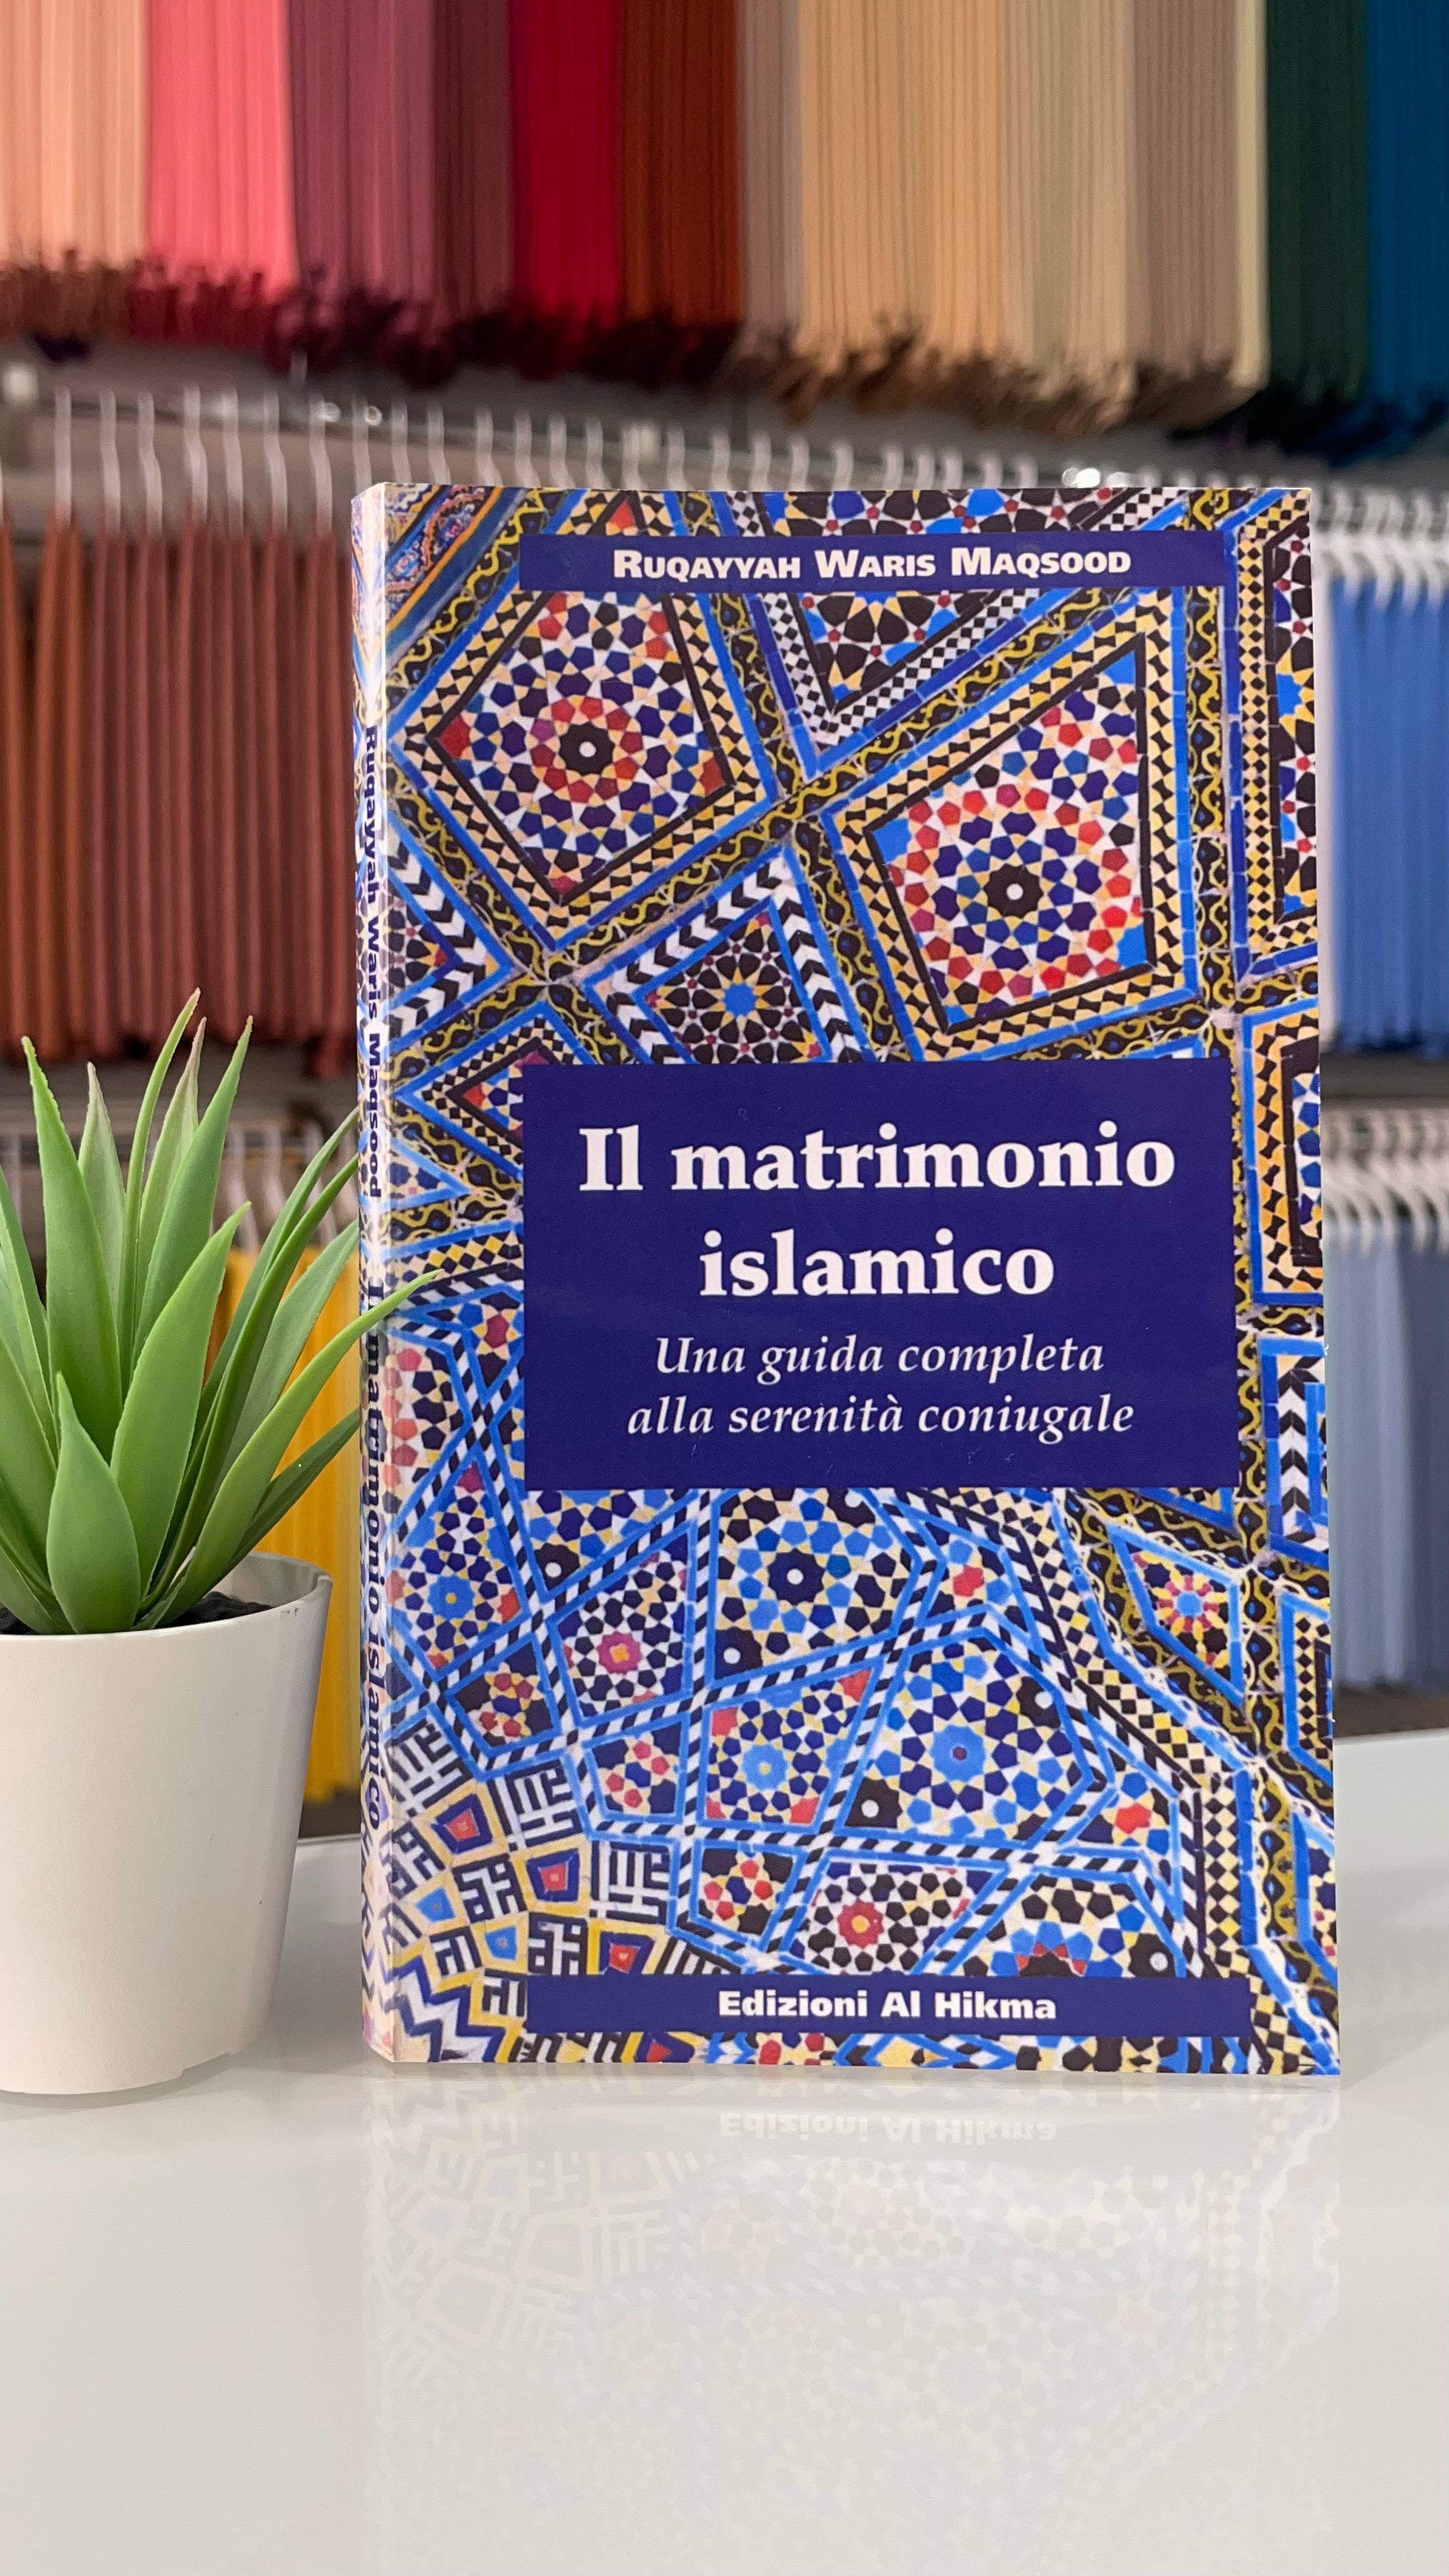 Il matrimonio islamico - una guida completa alla serenità coniugale - Hijab Paradise, libro, libri sul matrimonio, libri islamici 